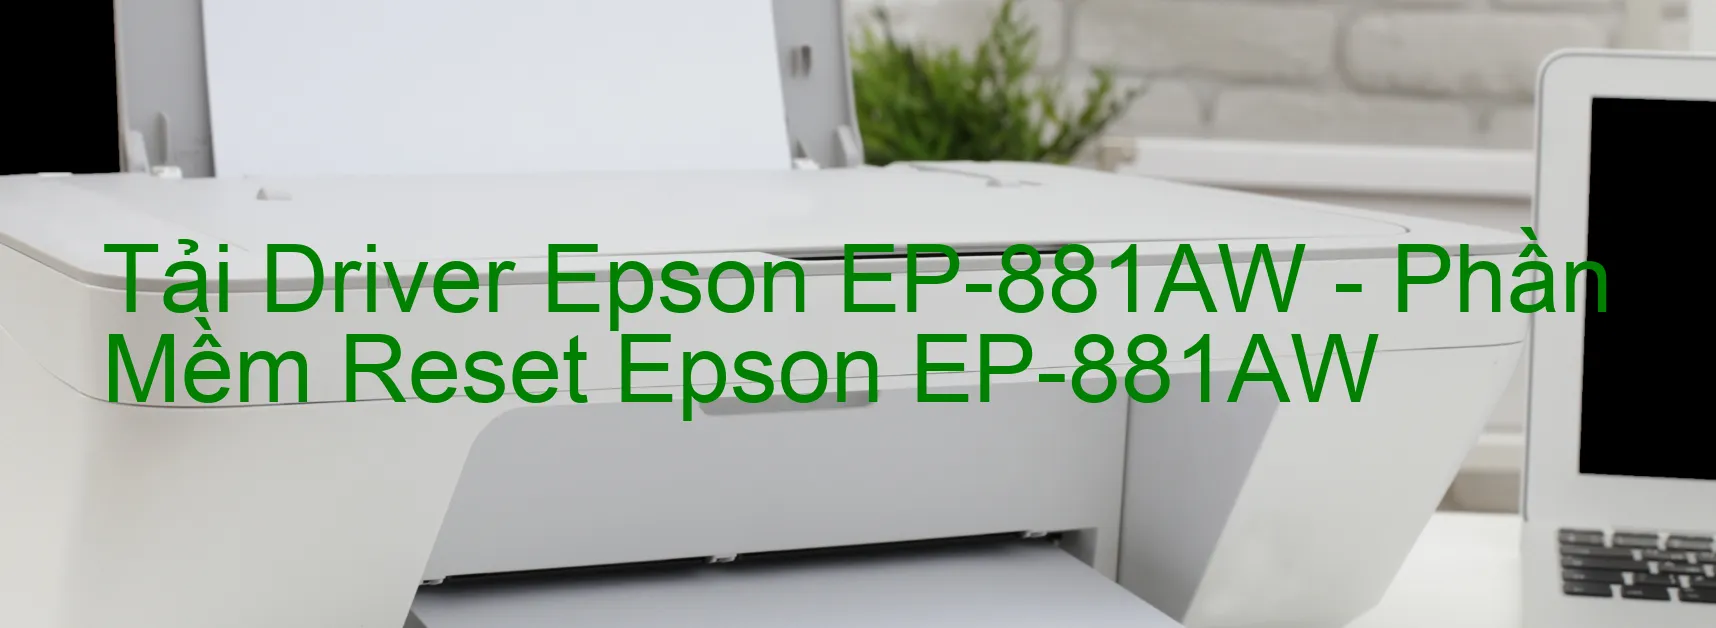 Driver Epson EP-881AW, Phần Mềm Reset Epson EP-881AW